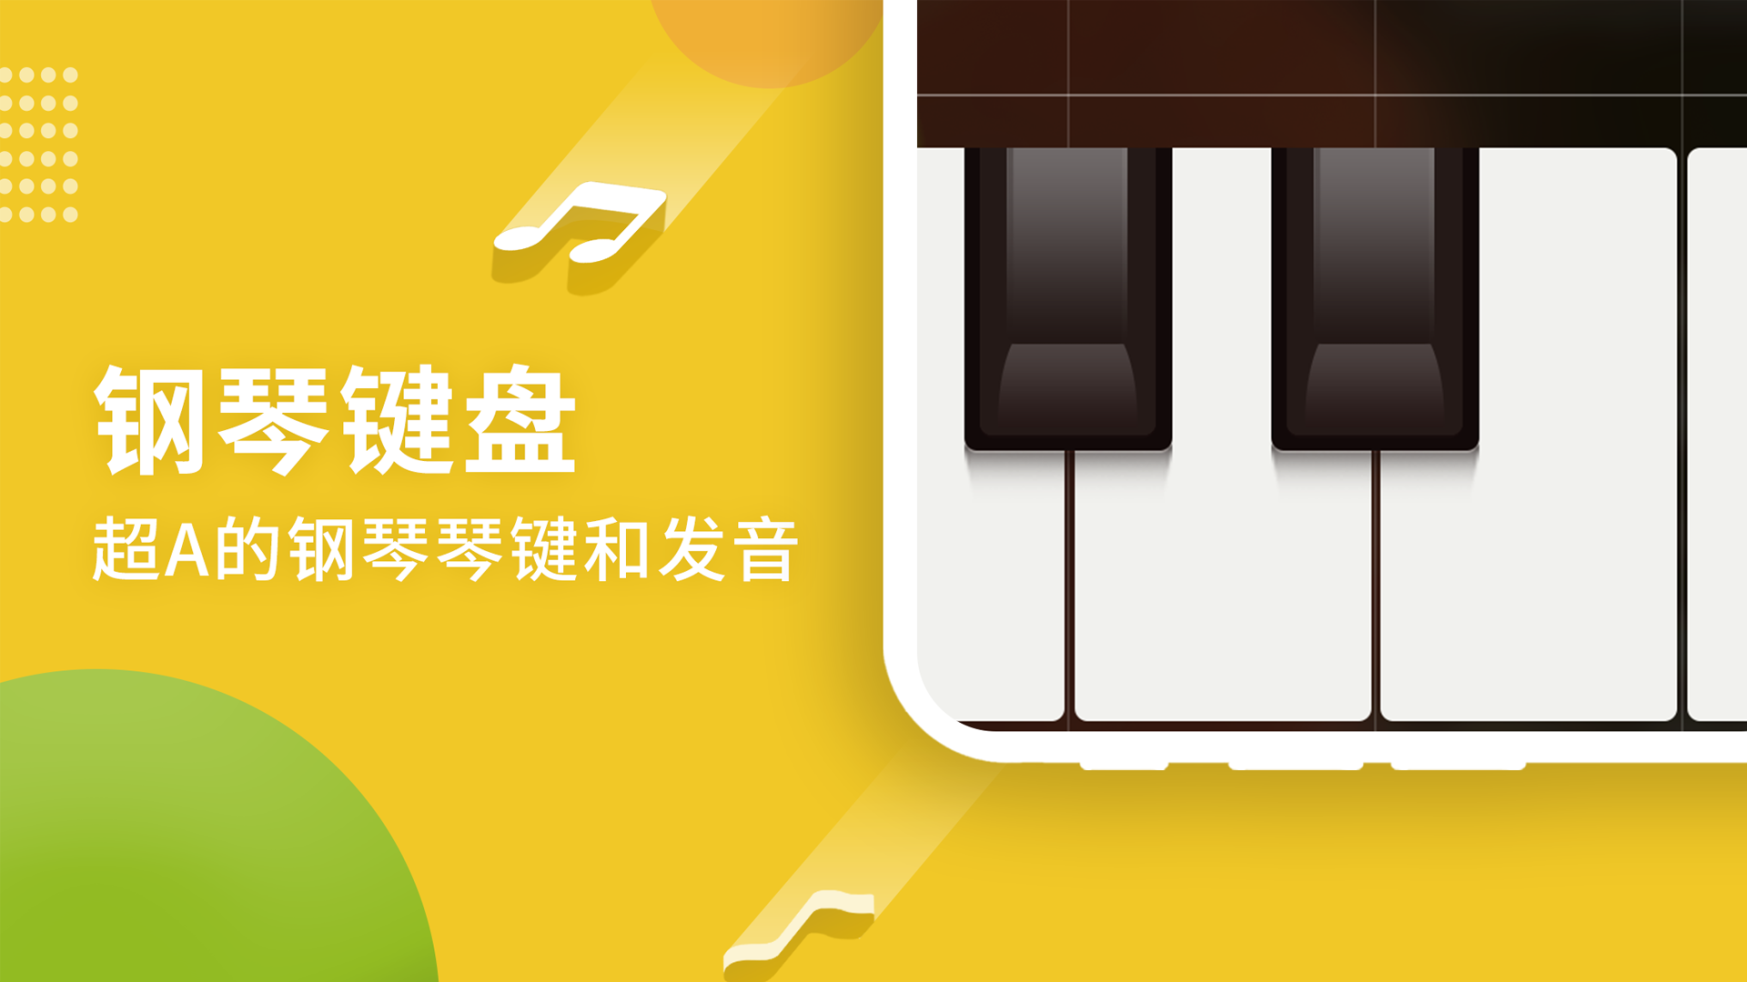 钢琴键盘模拟器app官方下载 v2.6截图1